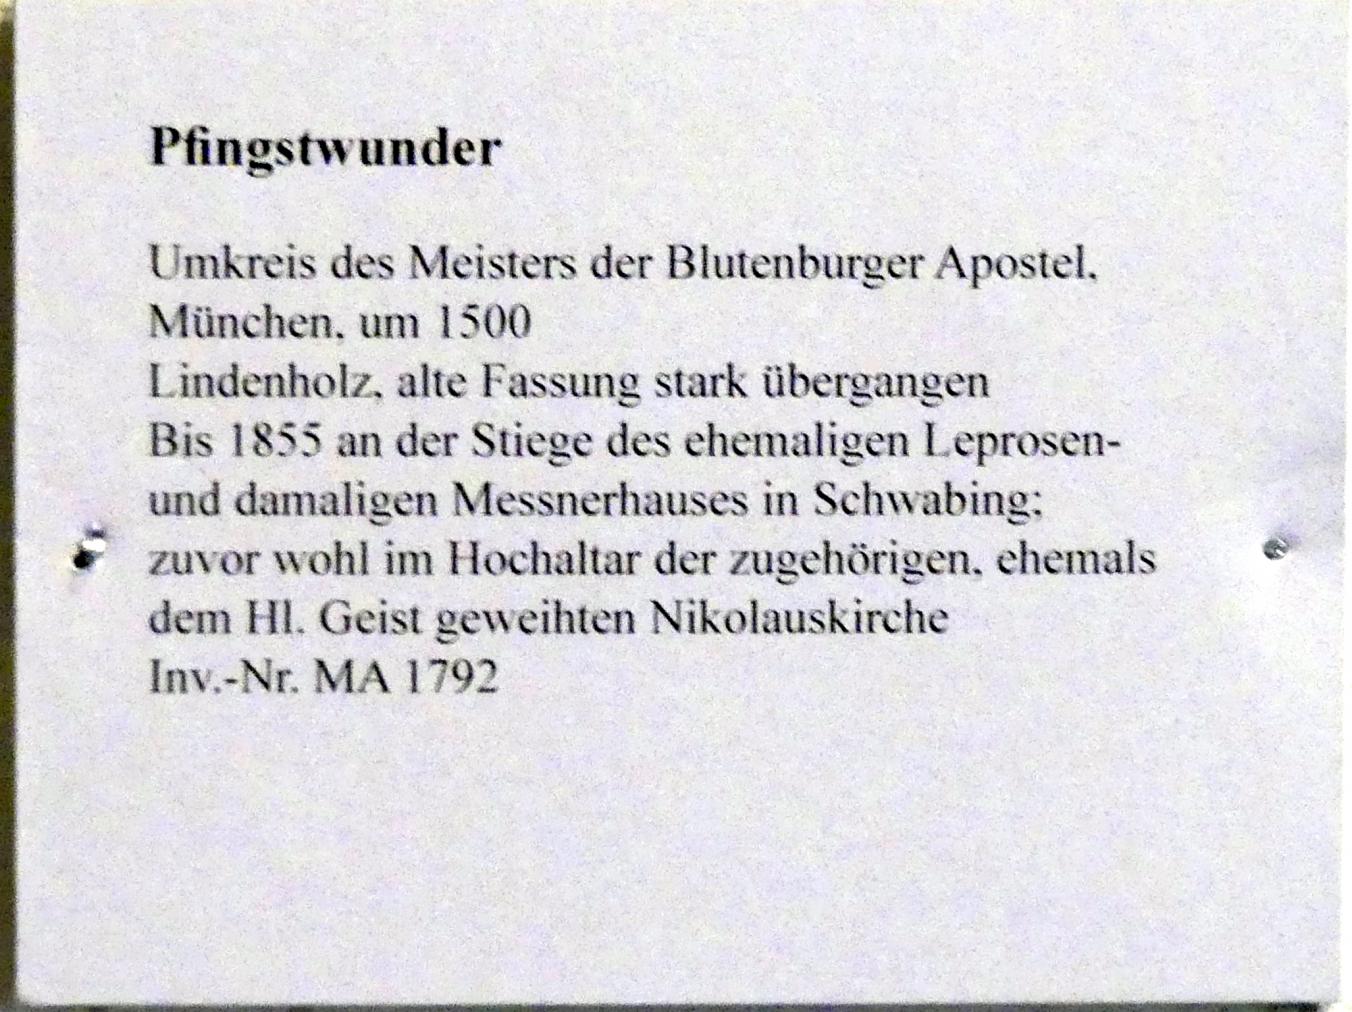 Meister der Blutenburger Apostel (Umkreis) (1500), Pfingstwunder, München-Schwabing, ehem. Kirche St. Nikolaus (1898 abgebrochen), jetzt München, Bayerisches Nationalmuseum, Saal 15, um 1500, Bild 2/2